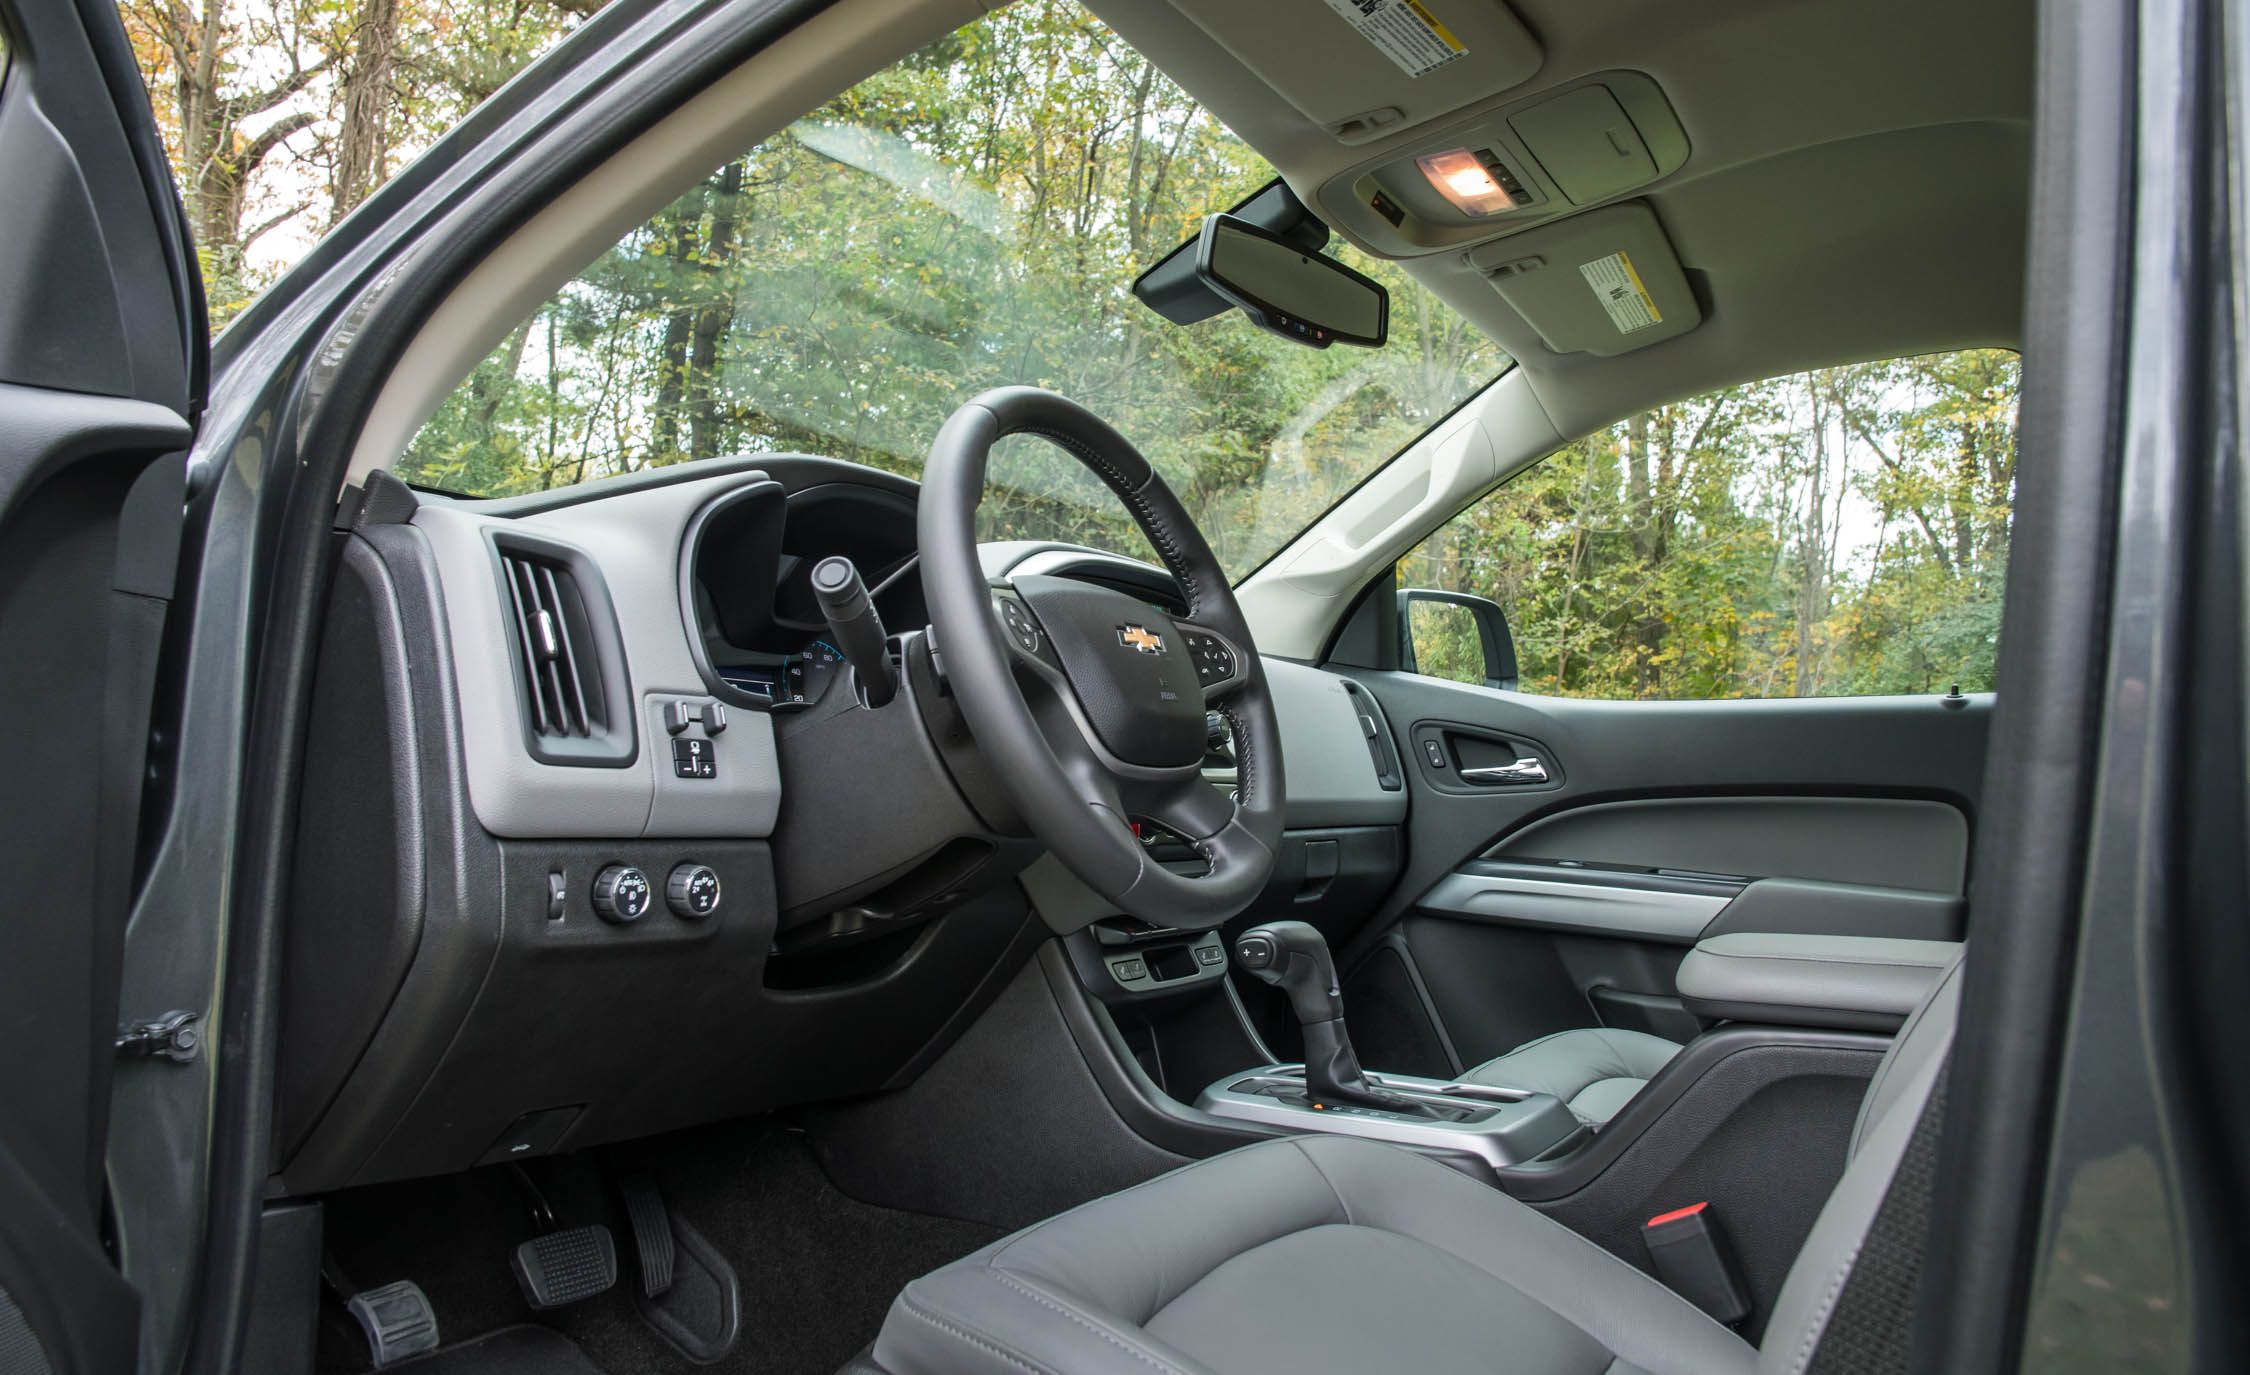 2017 Chevrolet Colorado Lt Interior Cockpit (View 16 of 41)